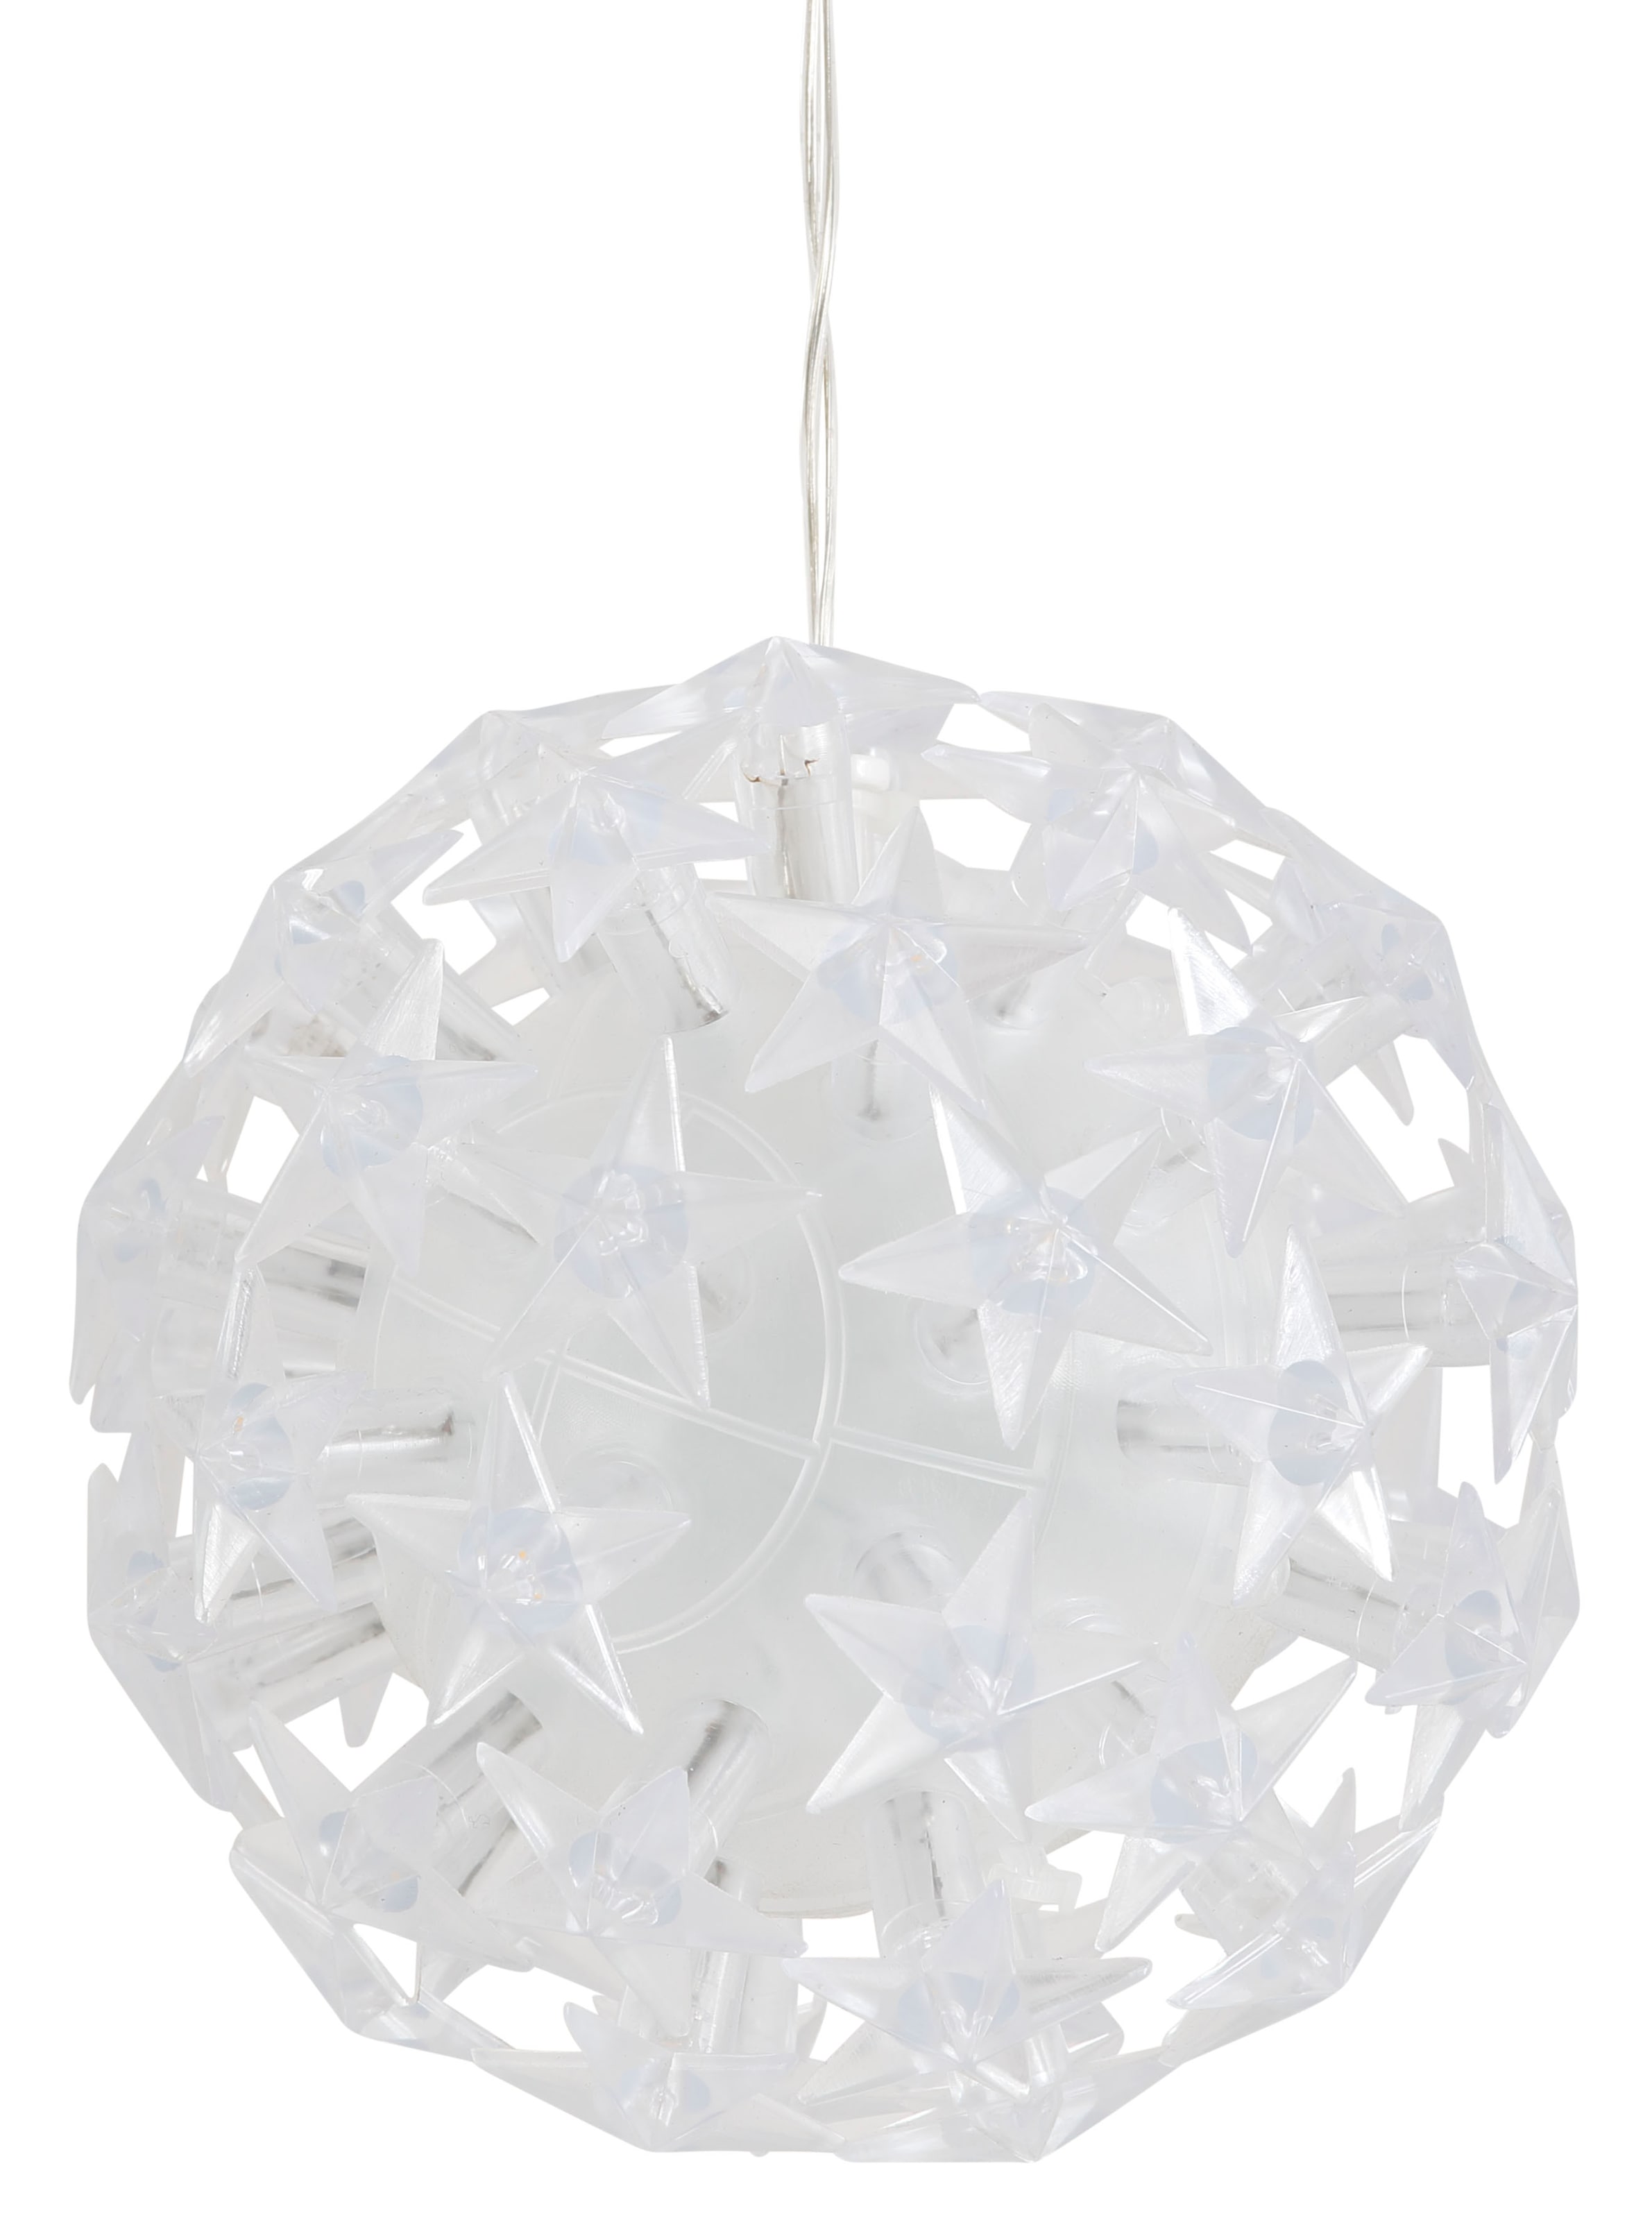 AM Design LED Dekolicht, LED Raten Kugel aussen kaufen Weihnachtsdeko mit Sternen, auf